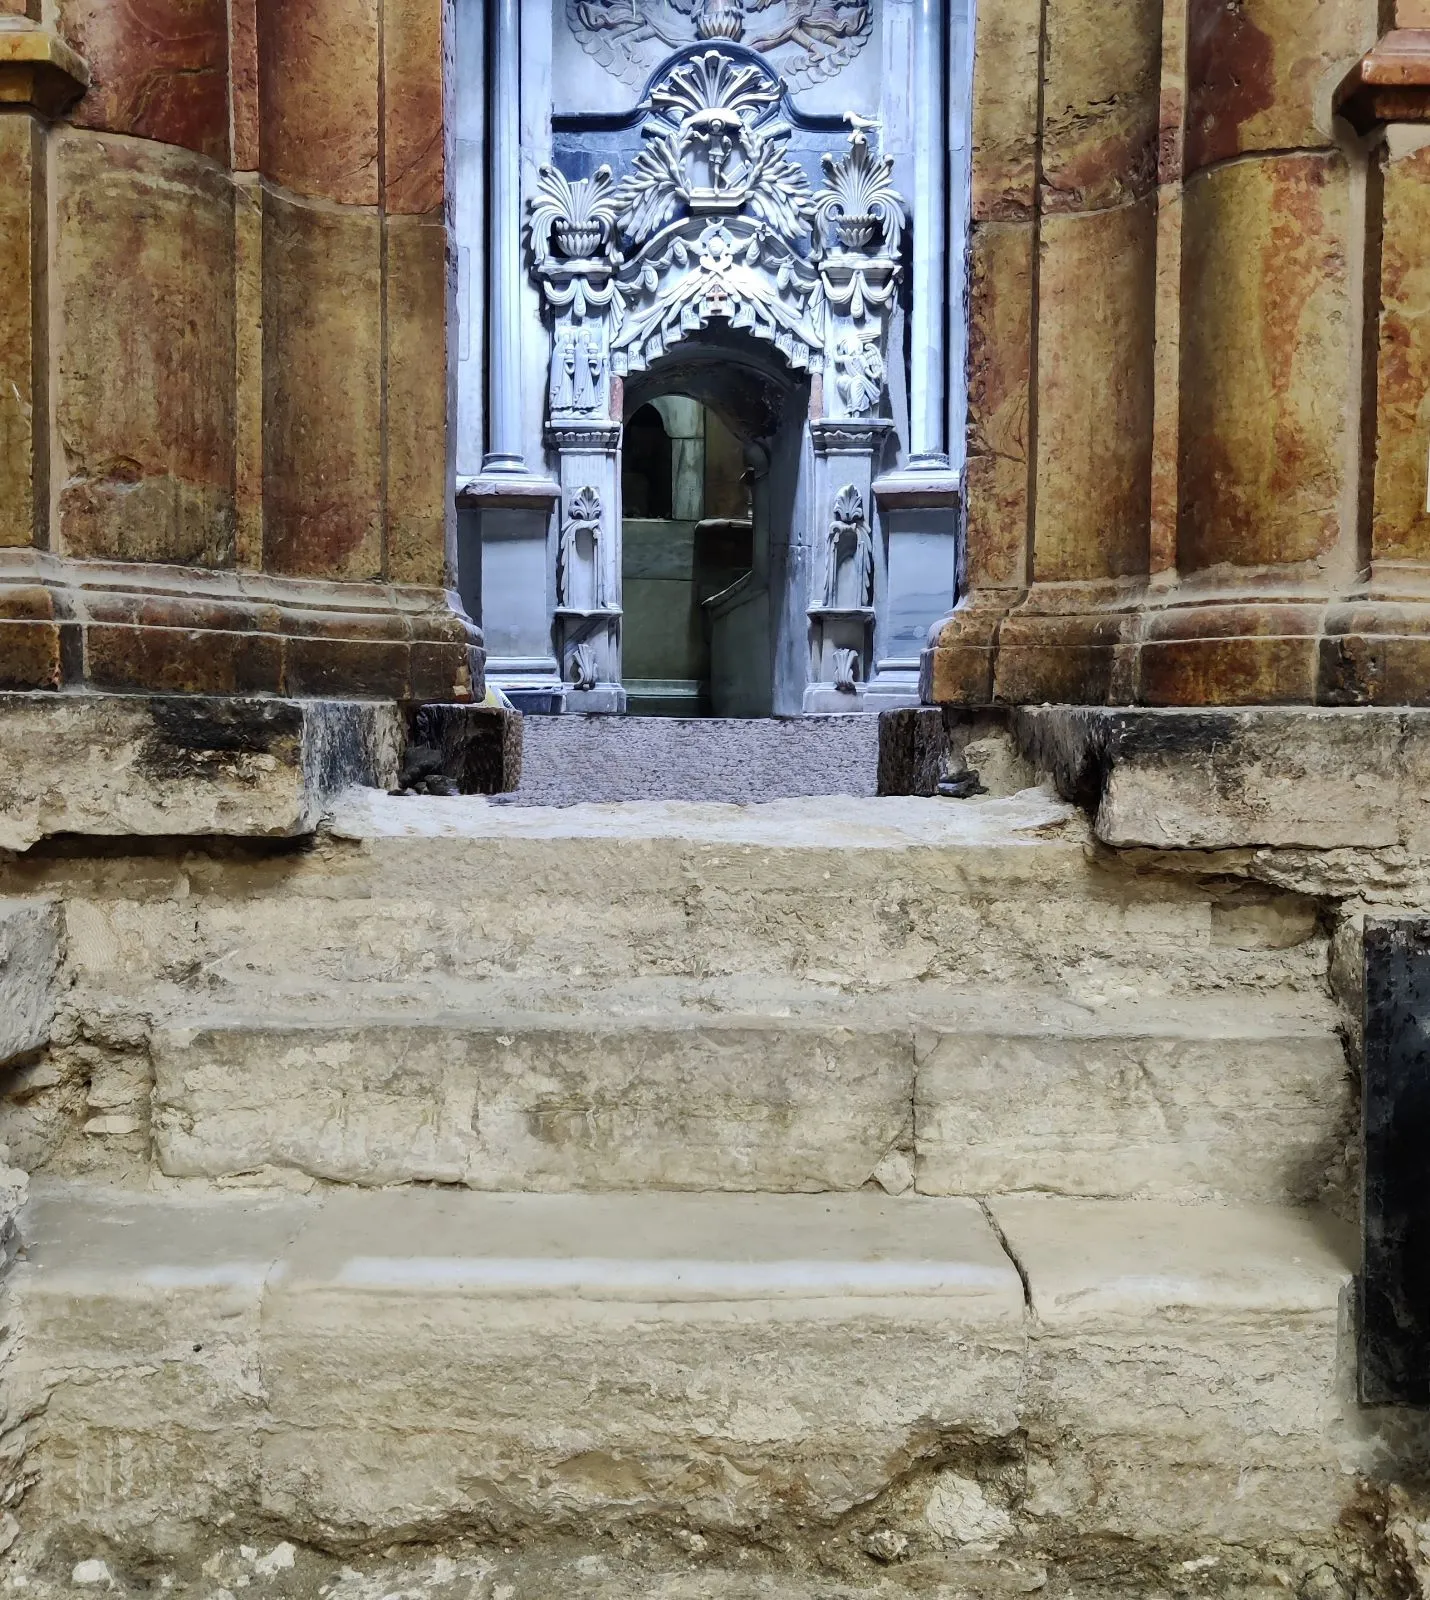 The marble steps -- Monumentalization of the edicule in the early Christian period. Photo credit: Archivio Università La Sapienza